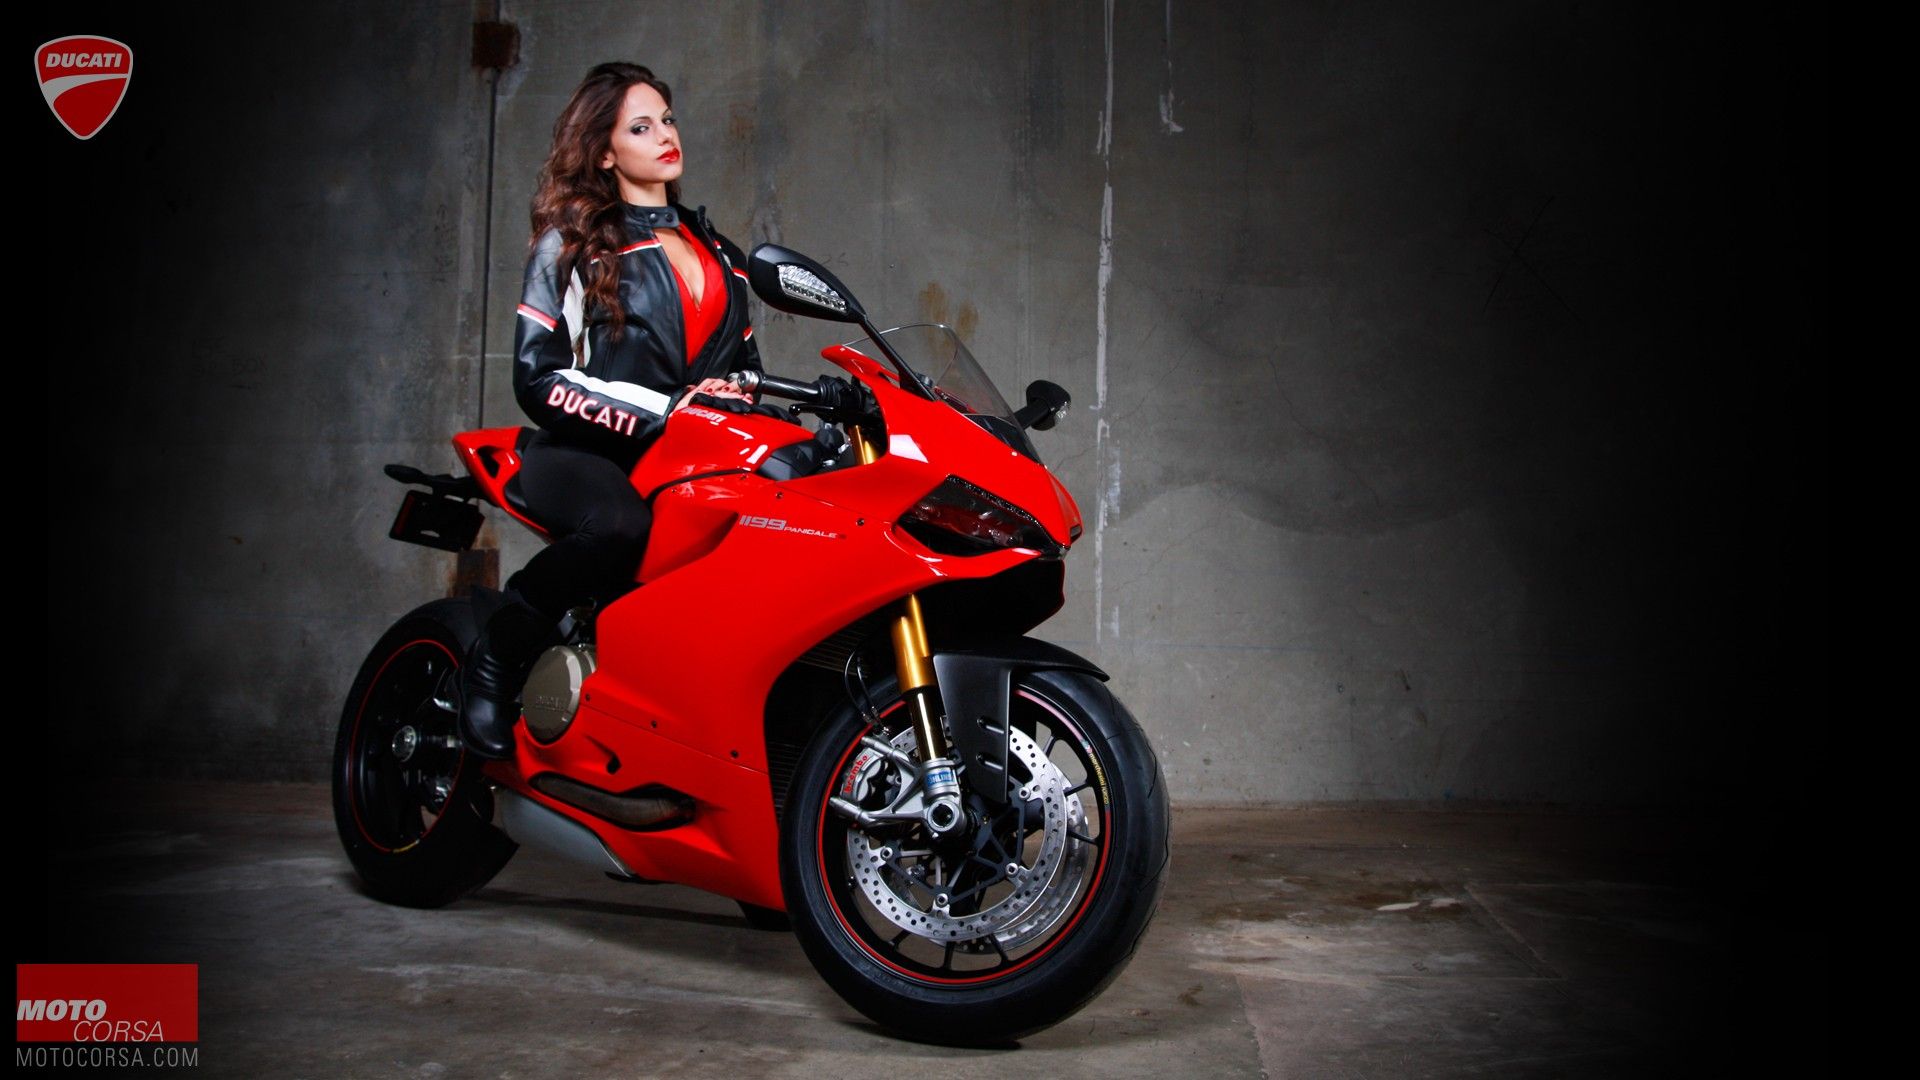 women With Bikes, Ducati Motorcycle Wallpaper HD / Desktop